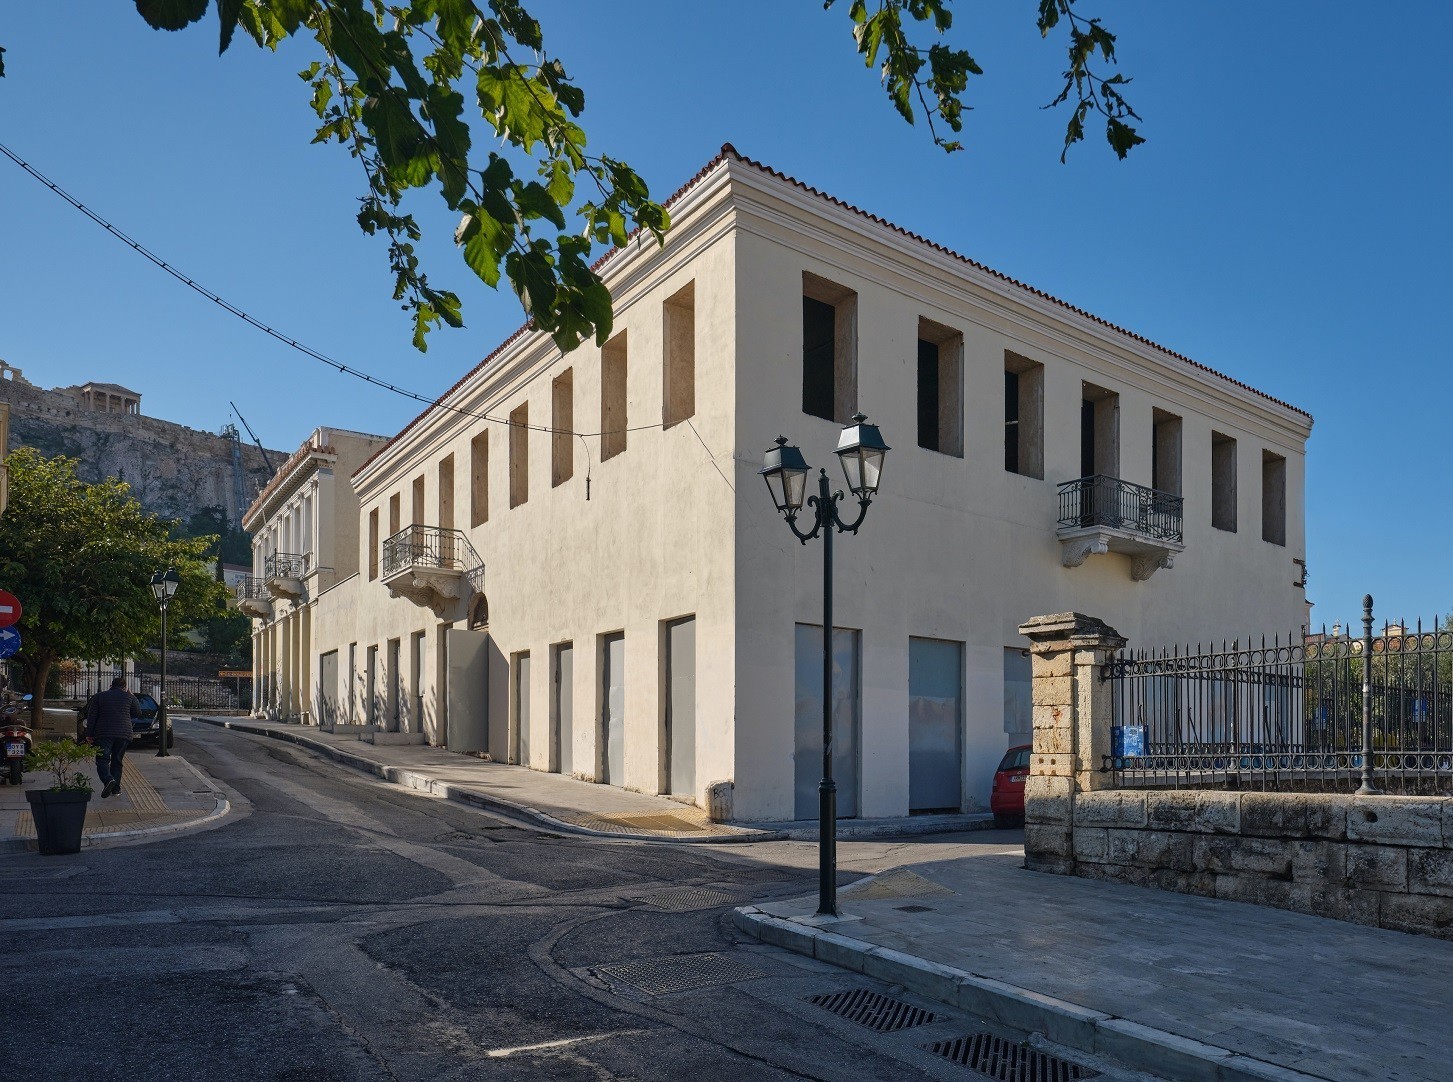 Πωλείται το πρώτο ξενοδοχείο της Αθήνας κάτω από την Ακρόπολη έναντι 18  εκατ. ευρώ | Ειδήσεις για την Οικονομία | newmoney